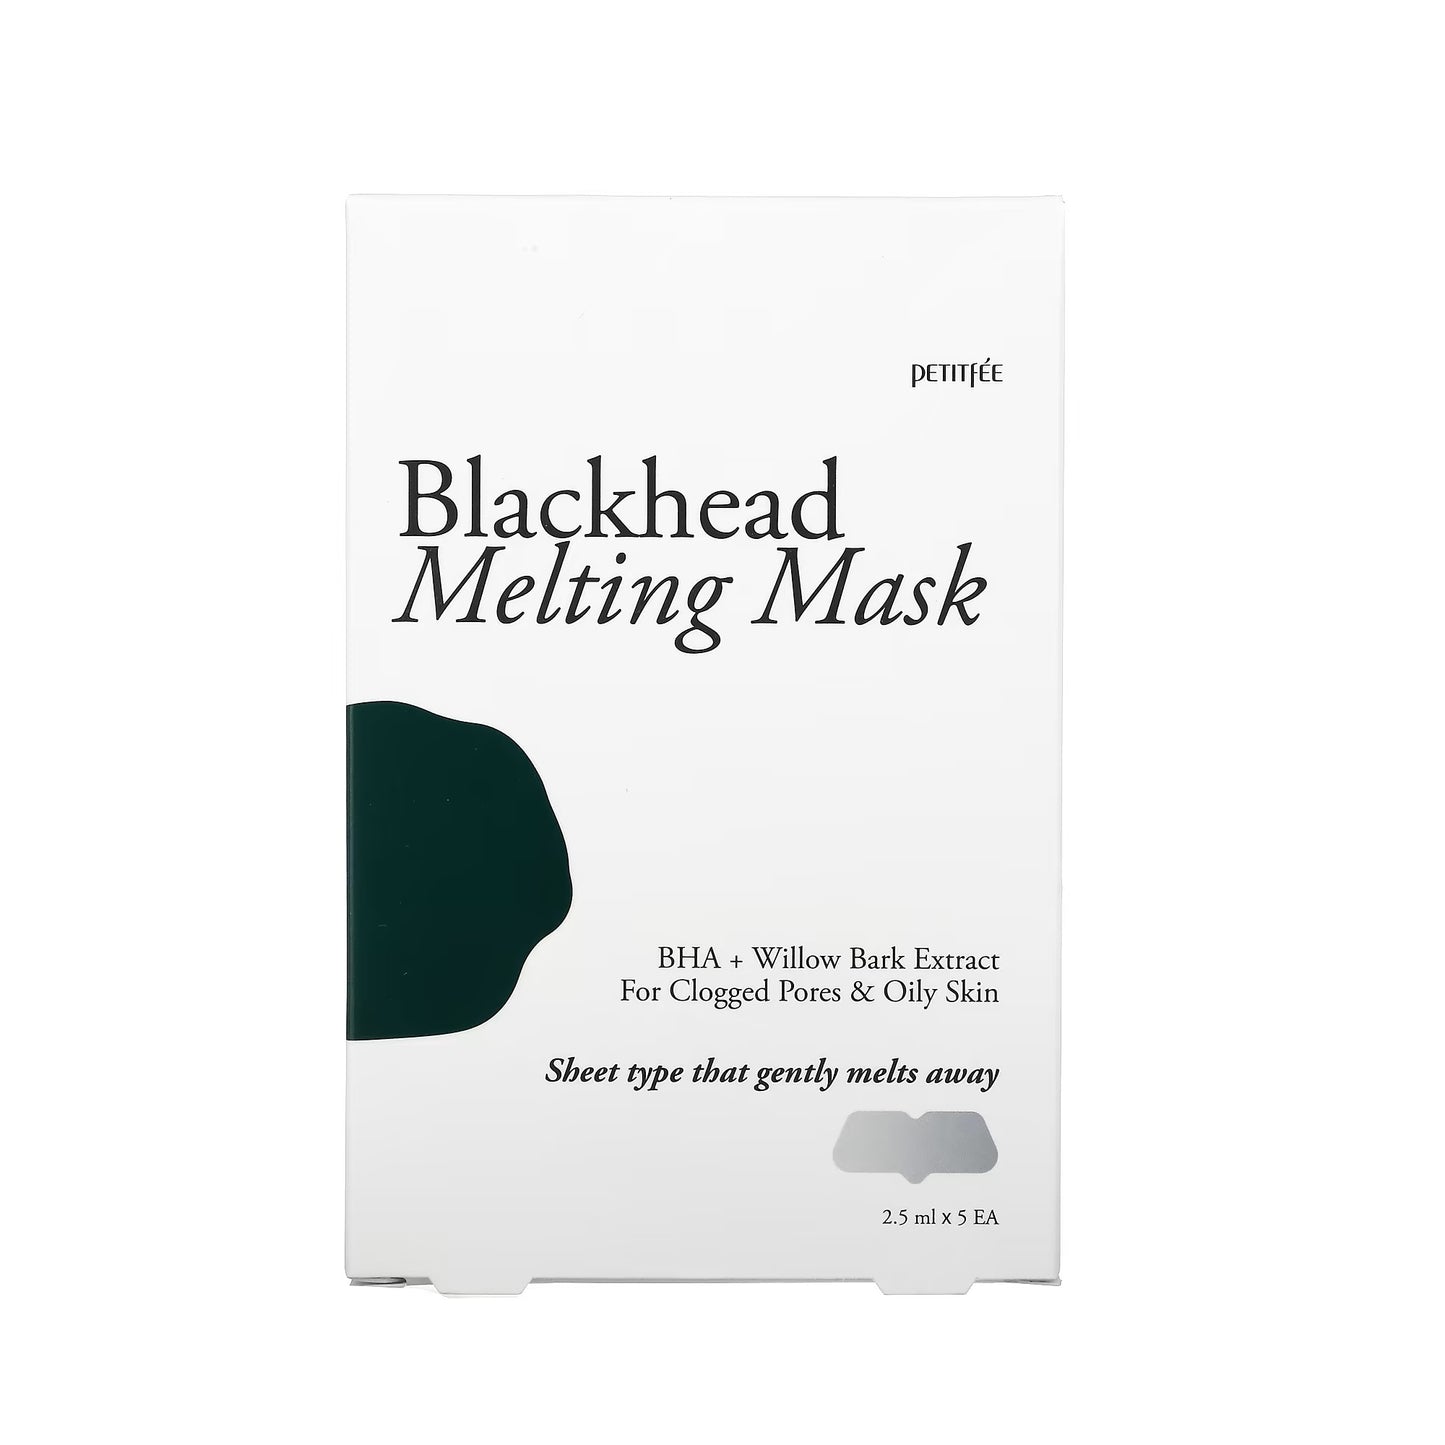 PETITFEE Blackhead Melting Mask 5 Pack